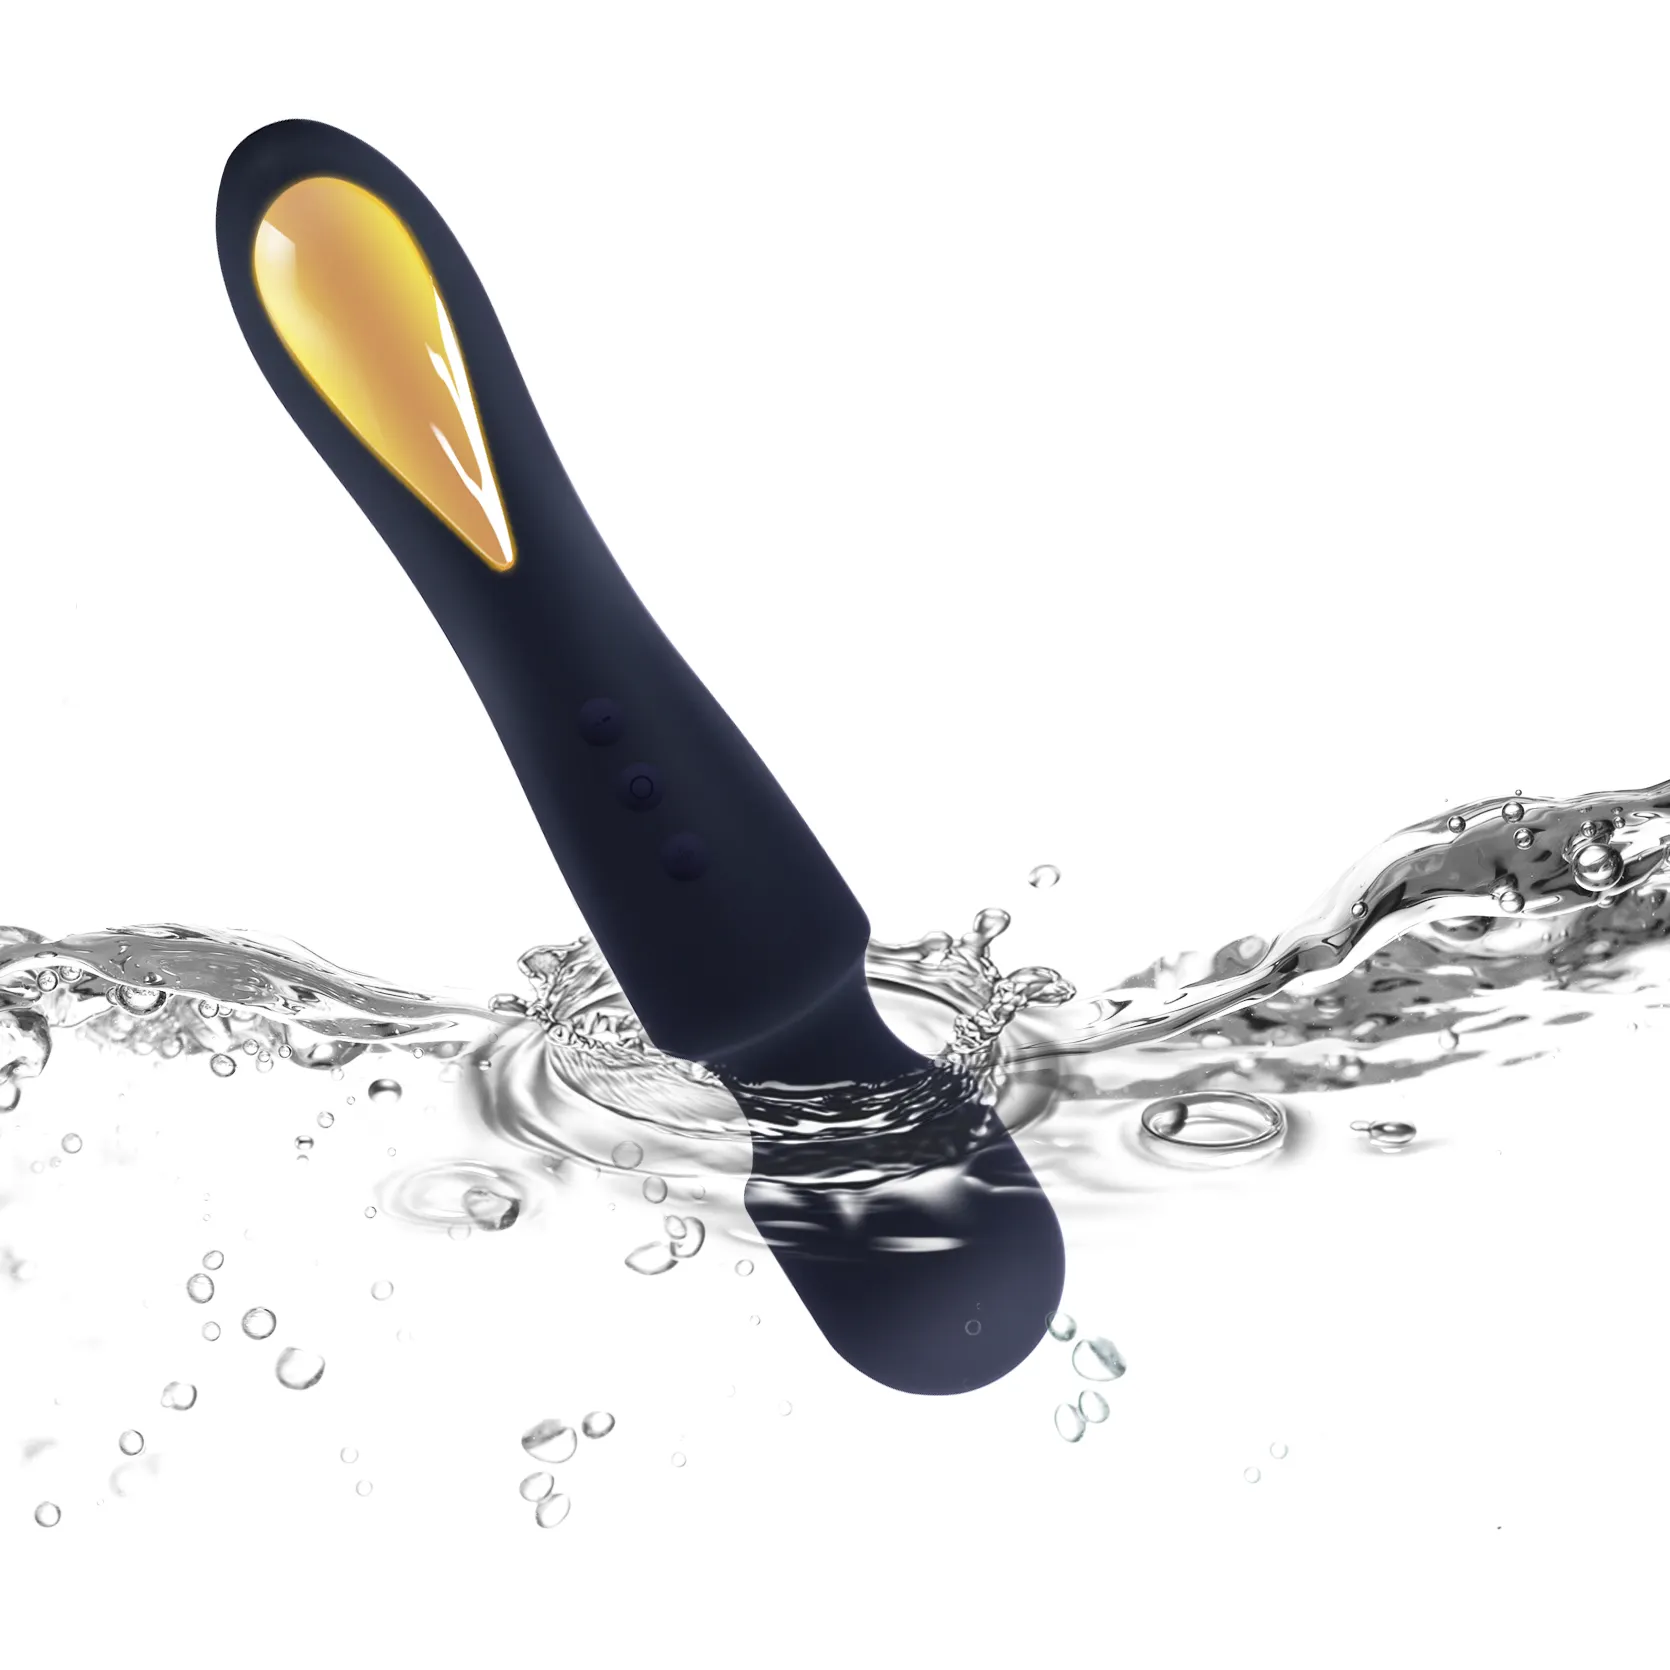 Odeco Original manufacturer adult women vibrator wand massager vibrator sex toy AV wand massager